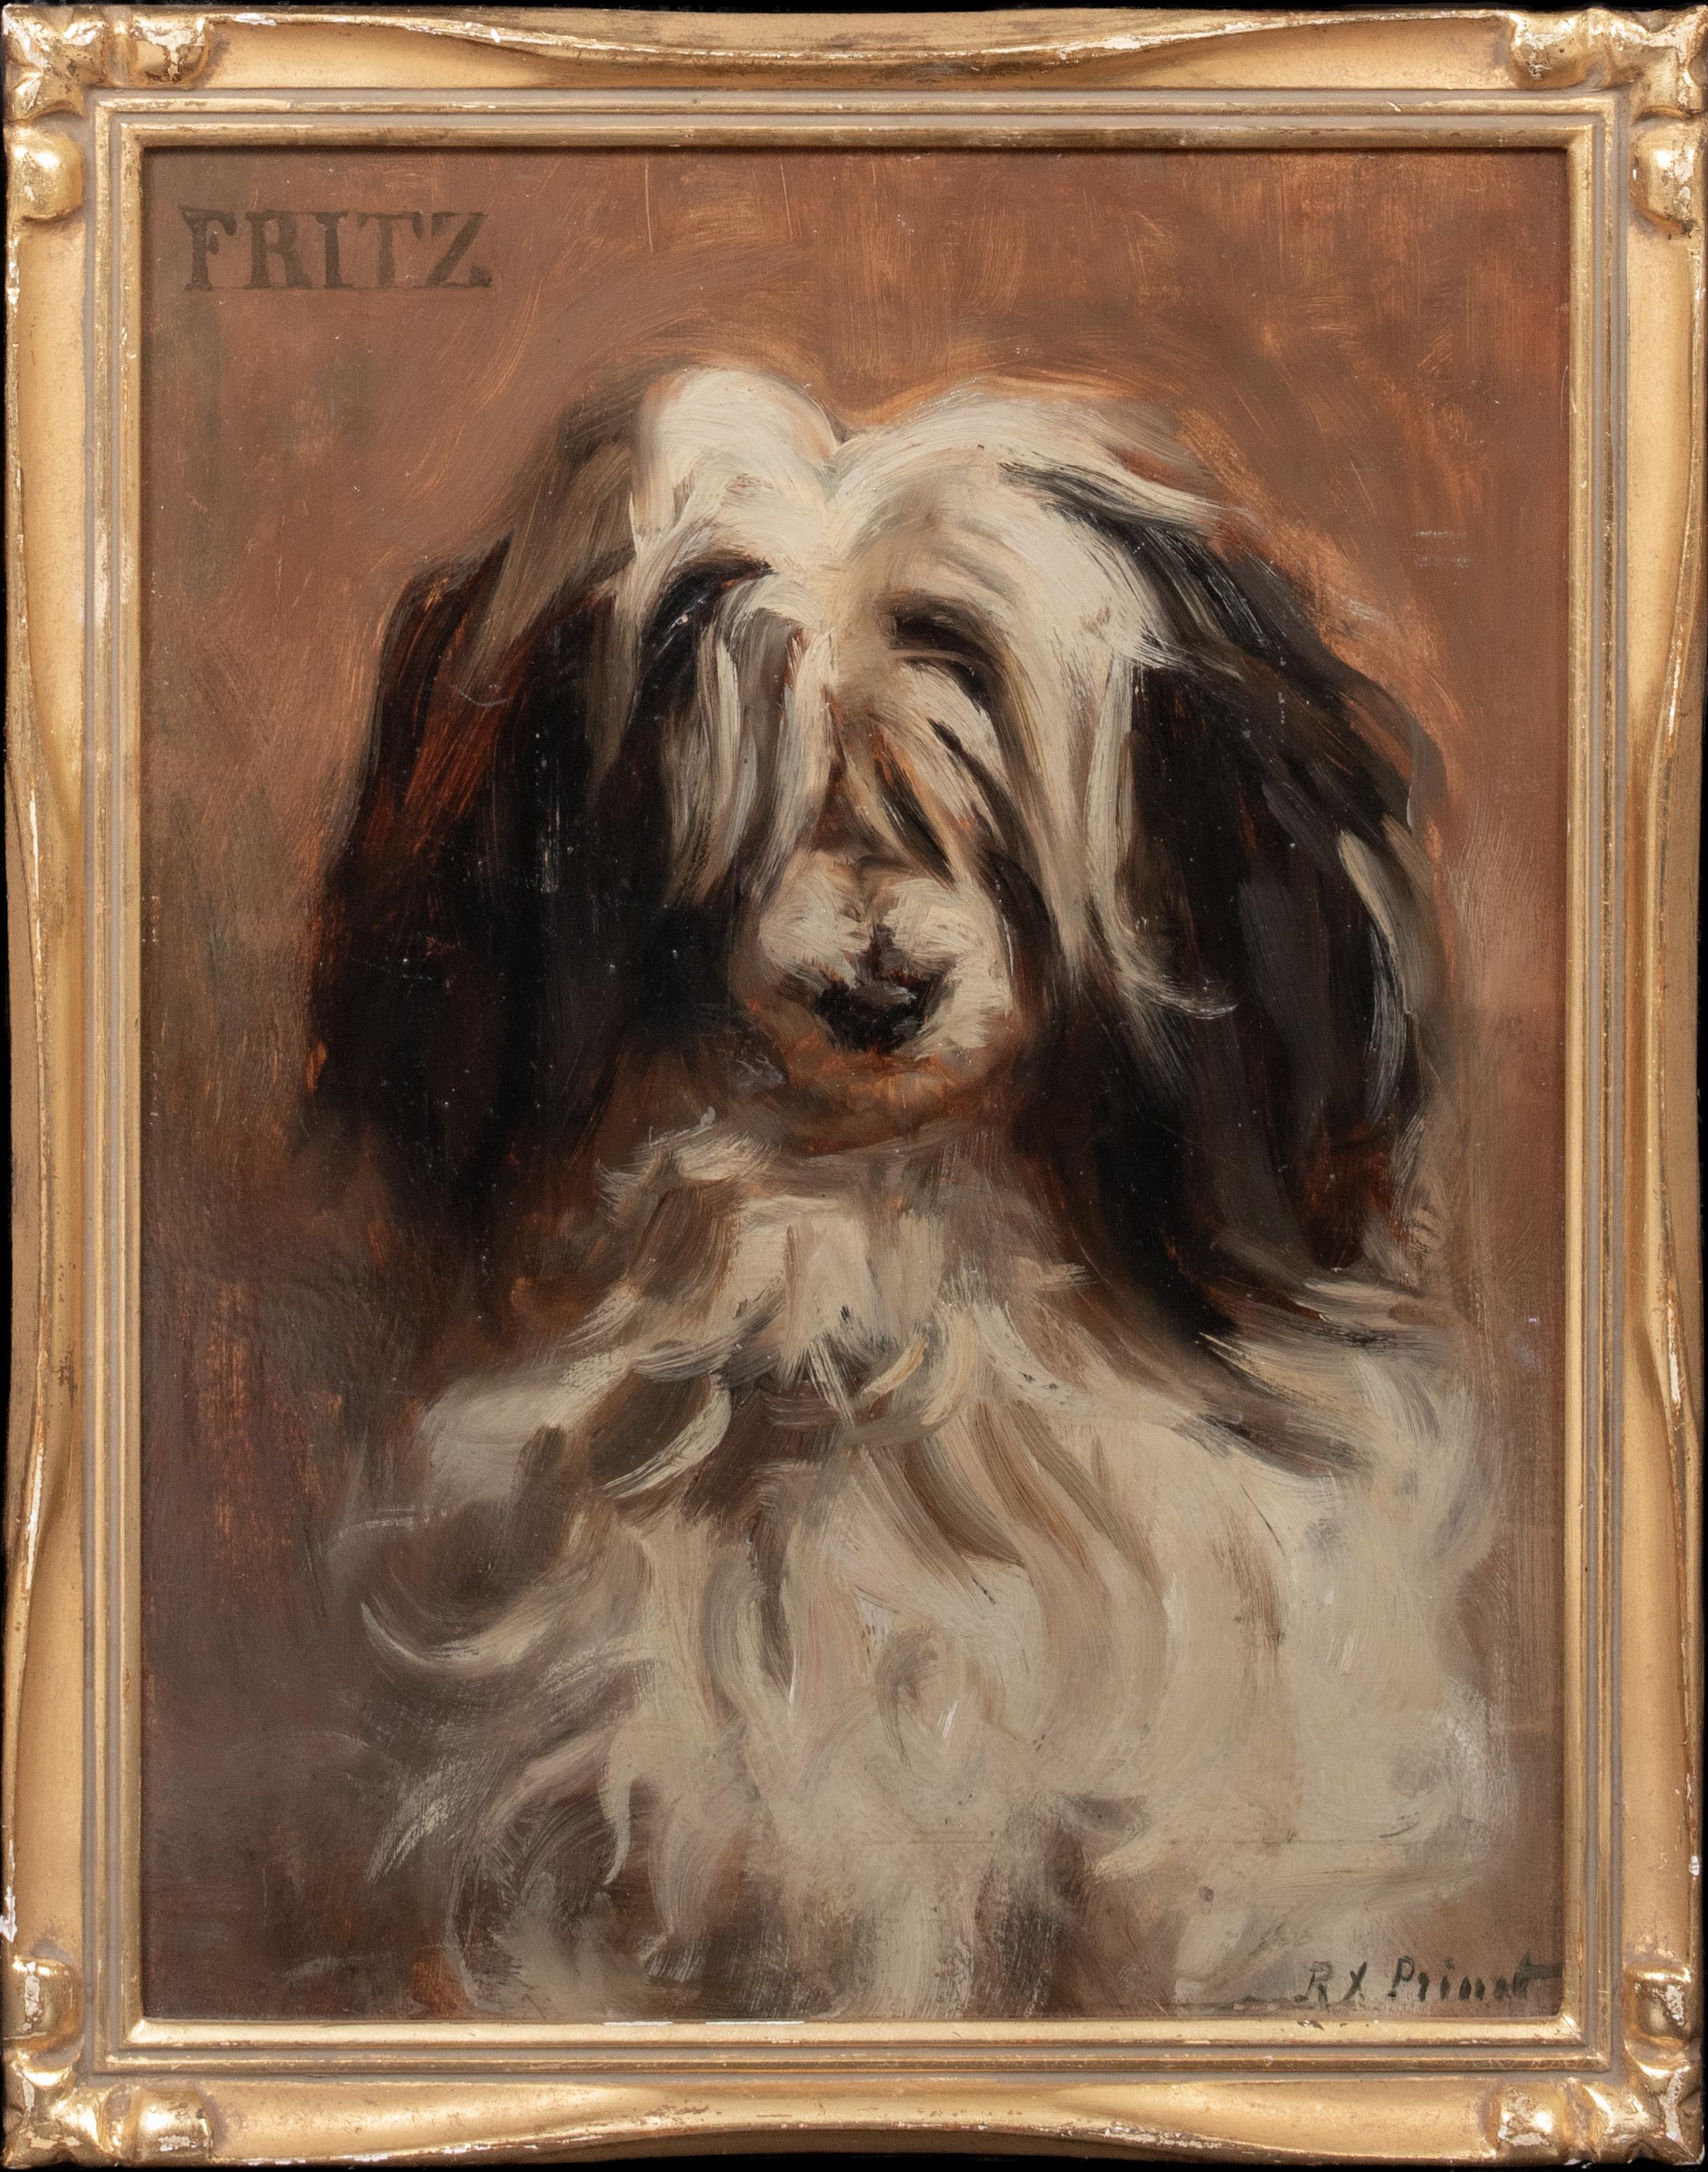 René Francois Xavier Prinet Portrait Painting - "Fritz" A French Sheepdog, dated 1897, Paris 